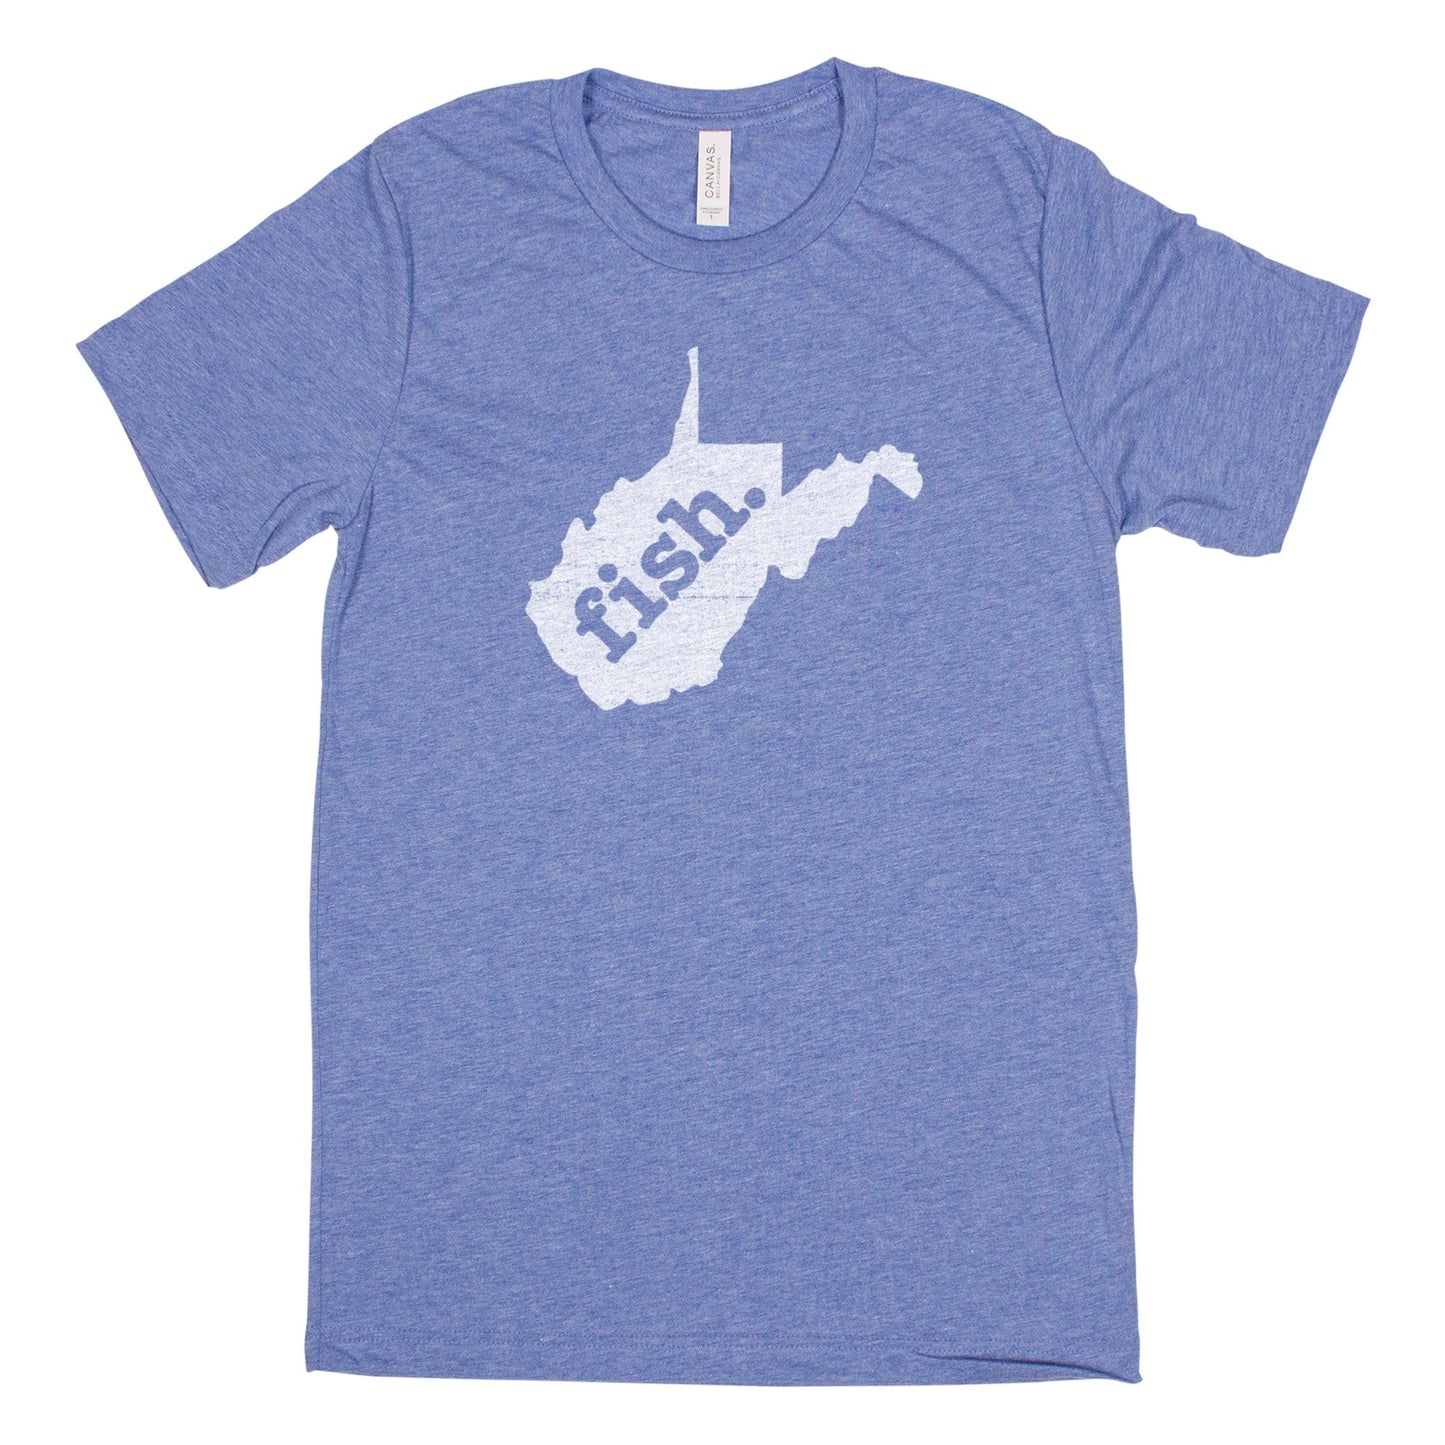 fish. Men's Unisex T-Shirt - West Virginia